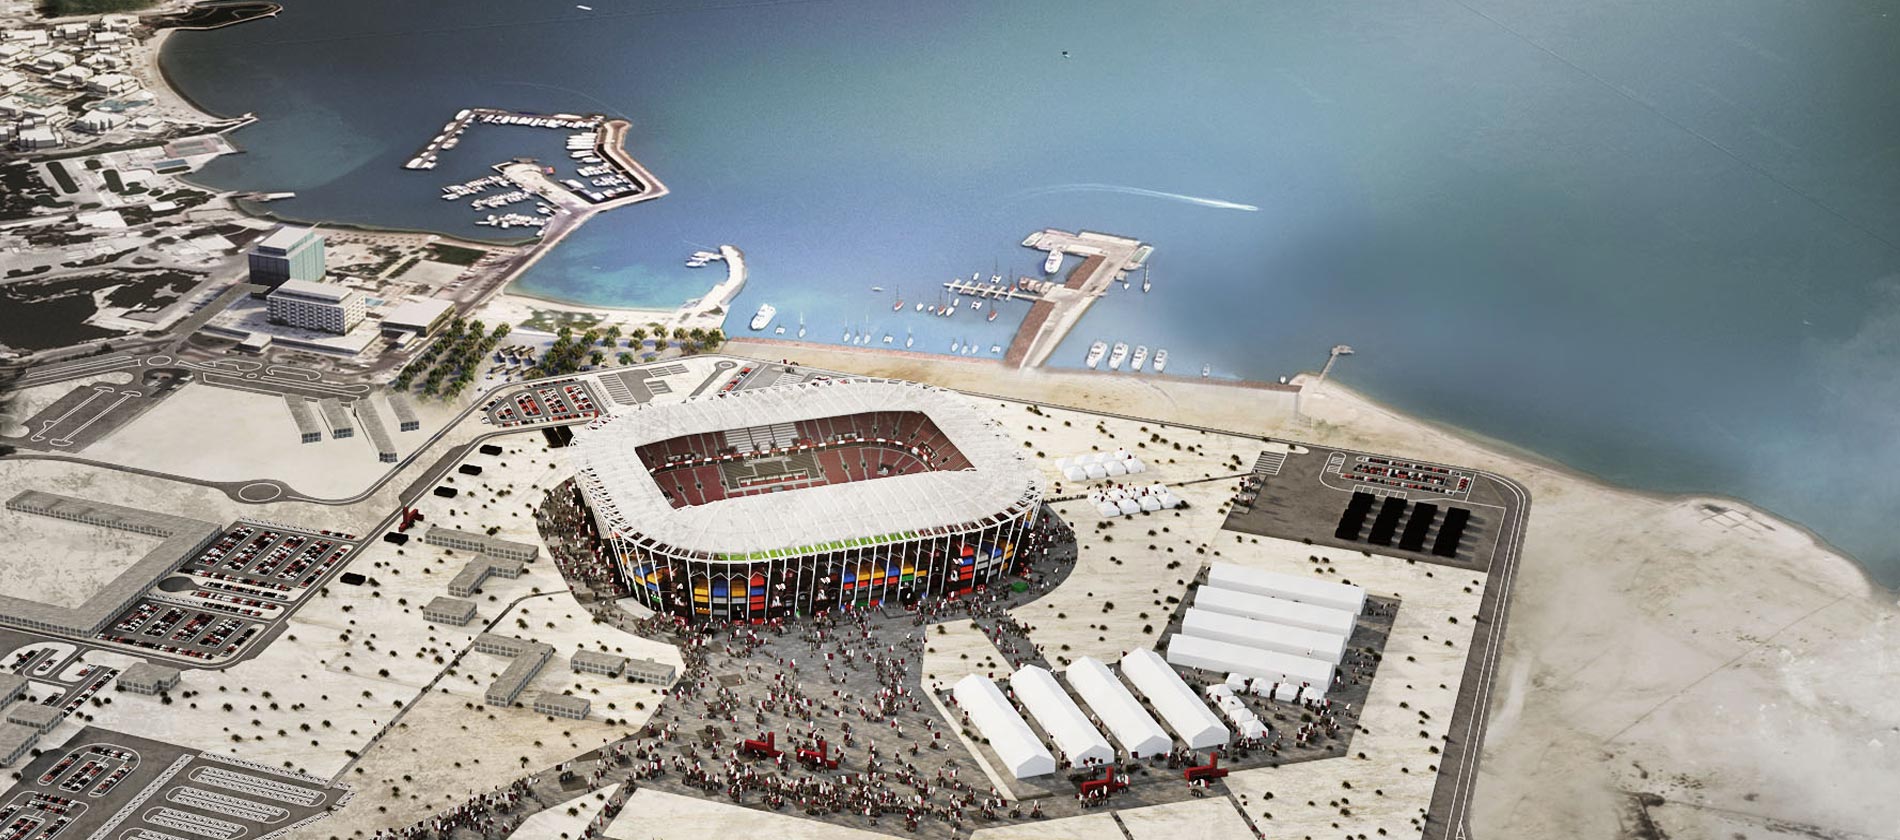 Sân vận động 'LEGO' độc lạ cho du khách ở World Cup 2022 - 1